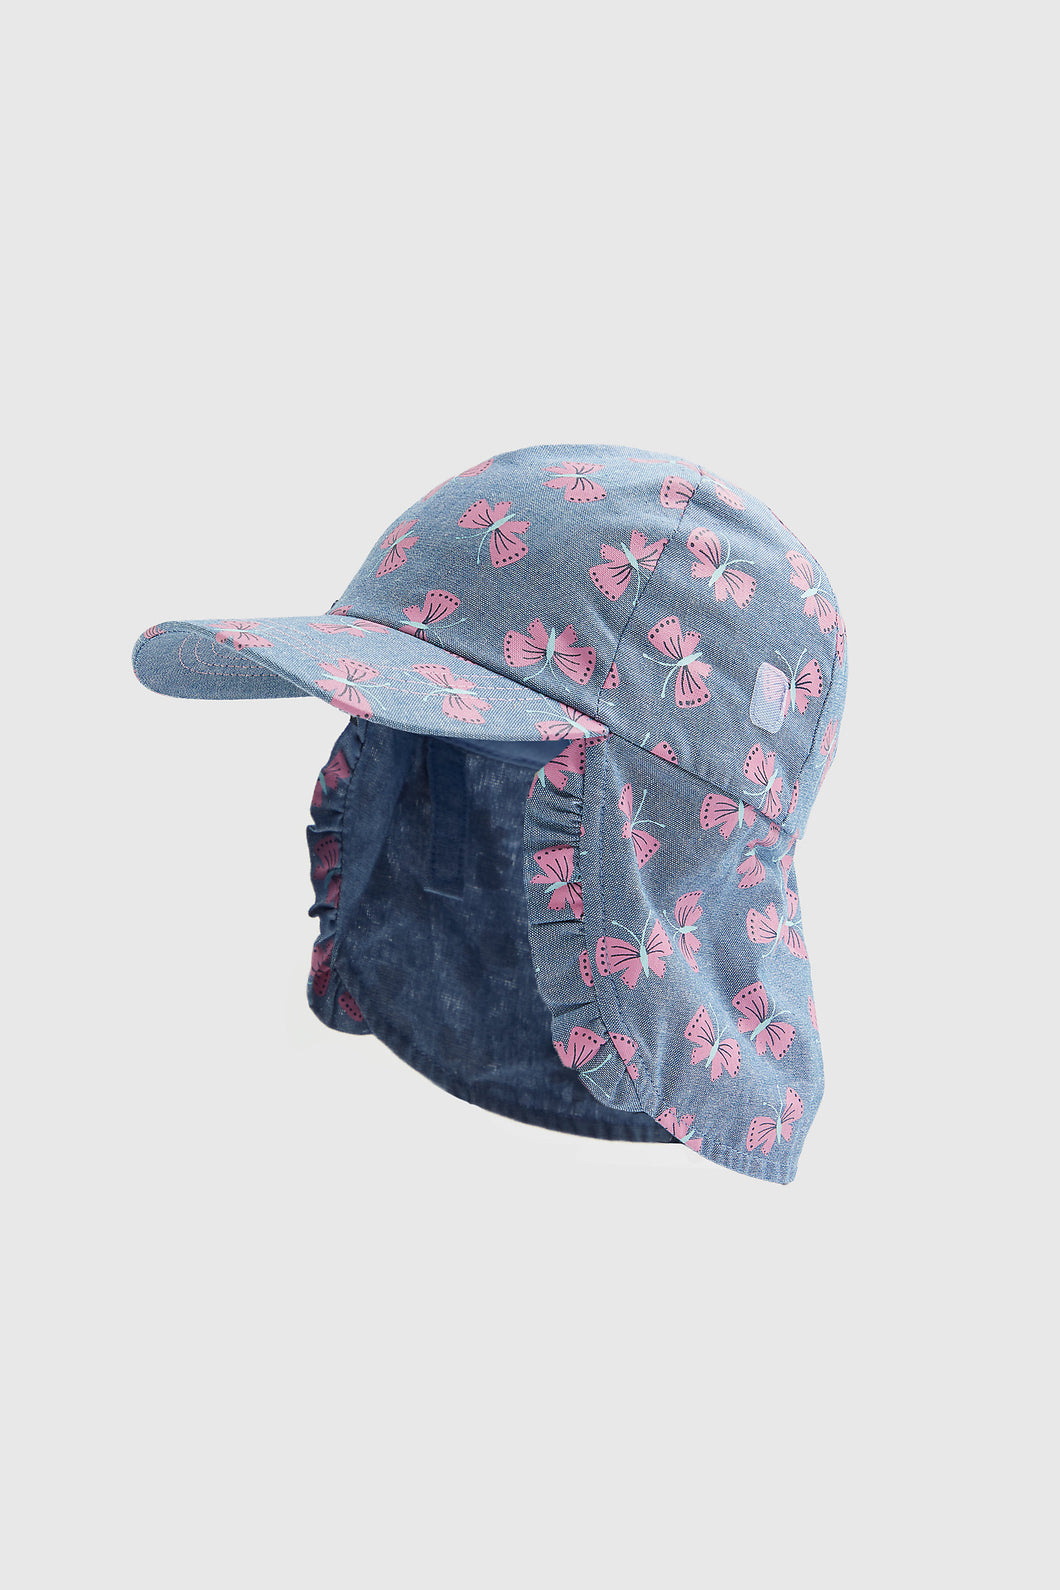 Mothercare Butterfly Sunsafe Keppi Hat